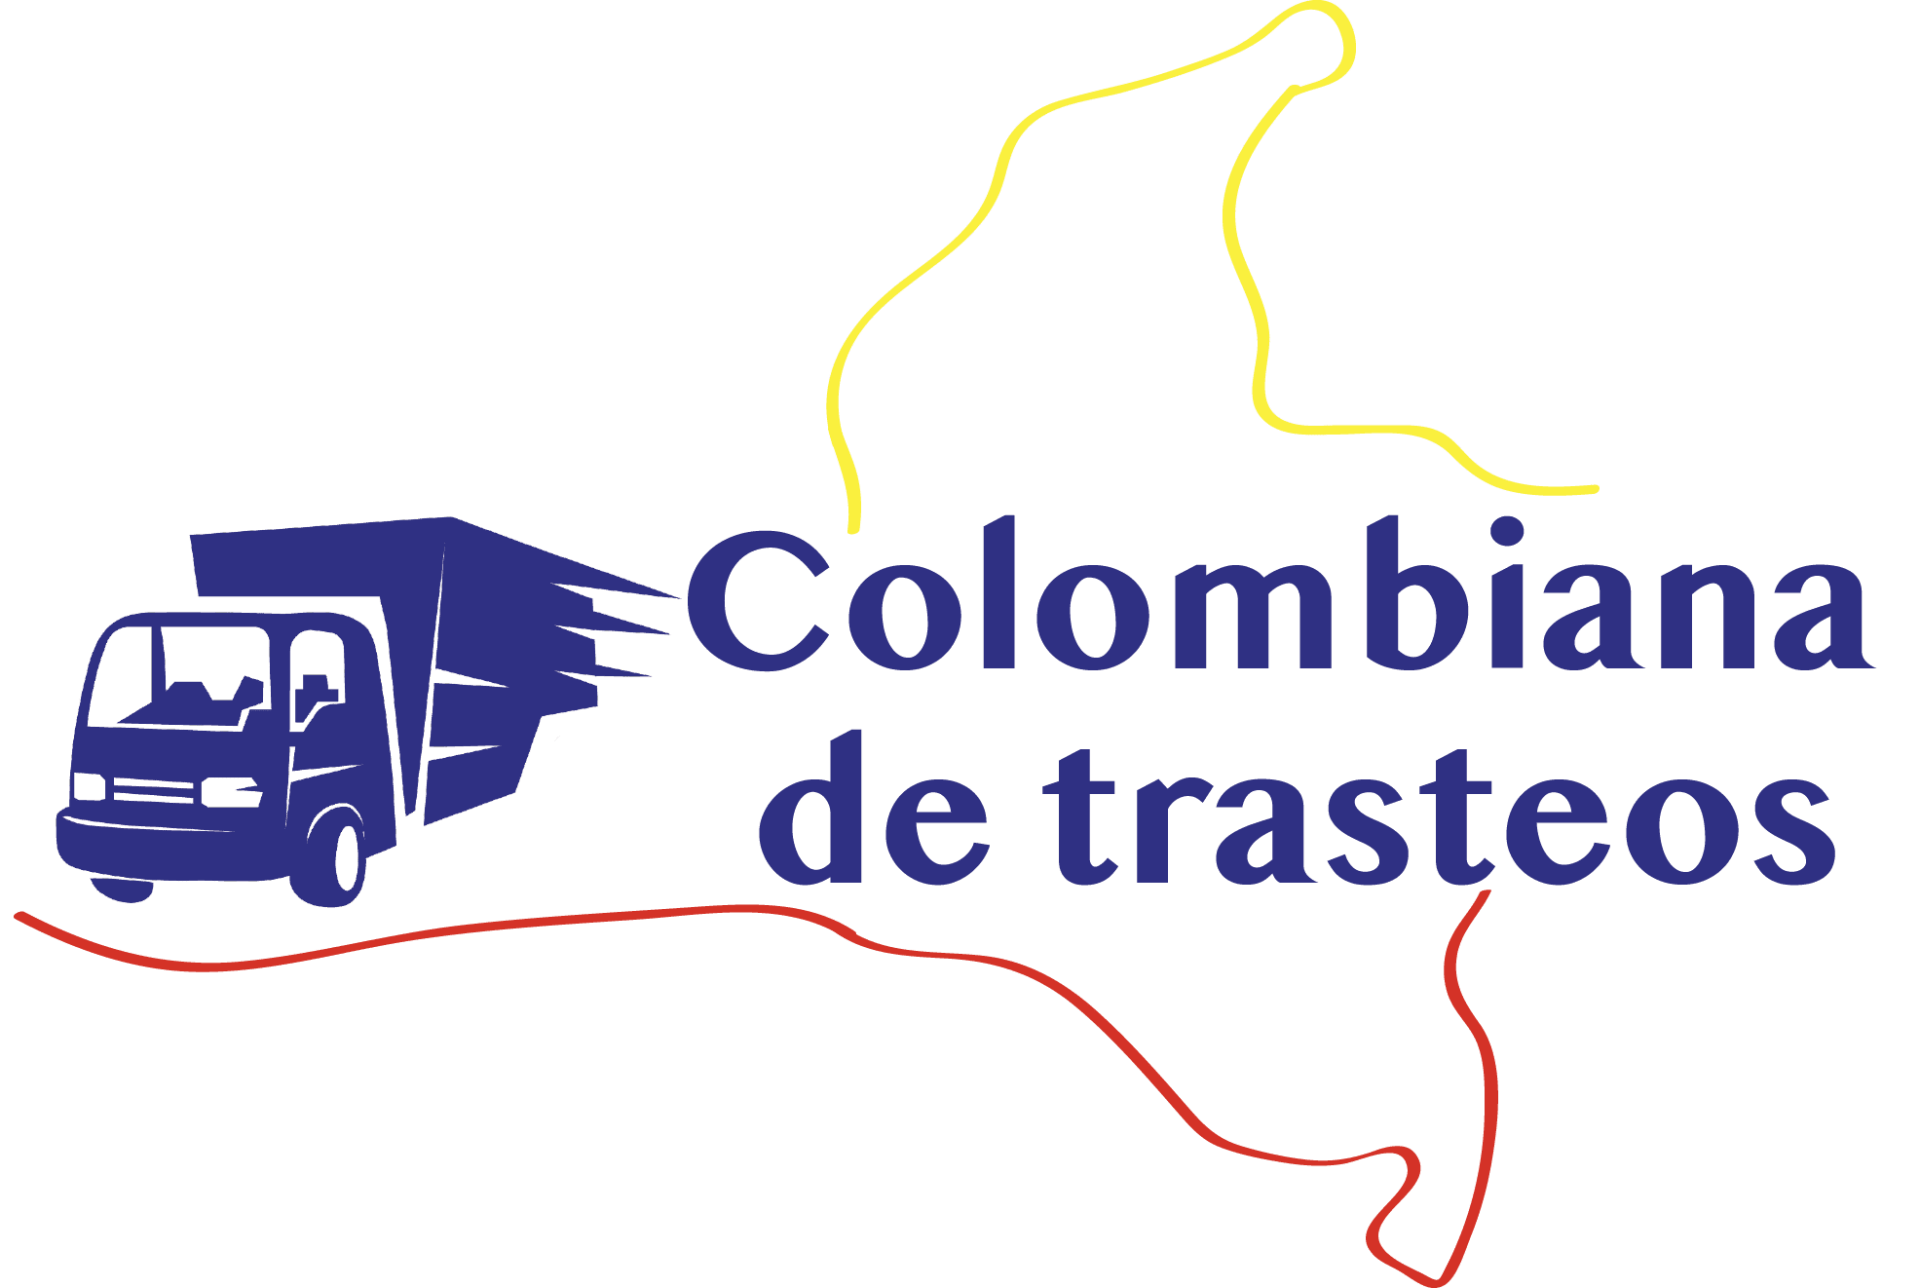 COLOMBIANA DE TRASTEOS